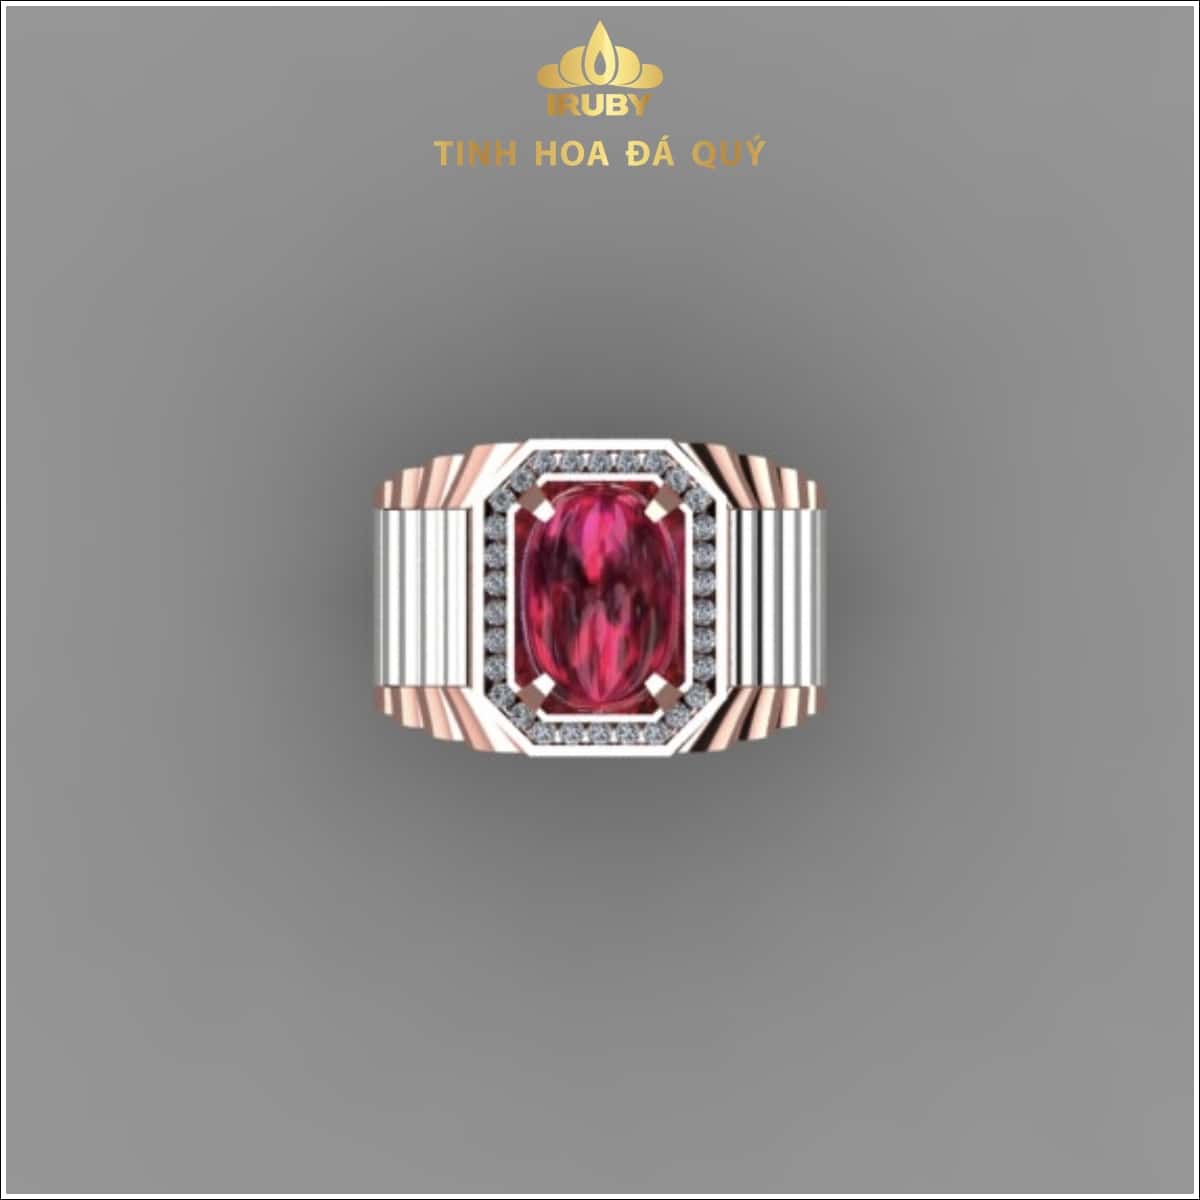 Mẫu 3d nhẫn nam Rolex phối vàng trắng và hồng – IR230912